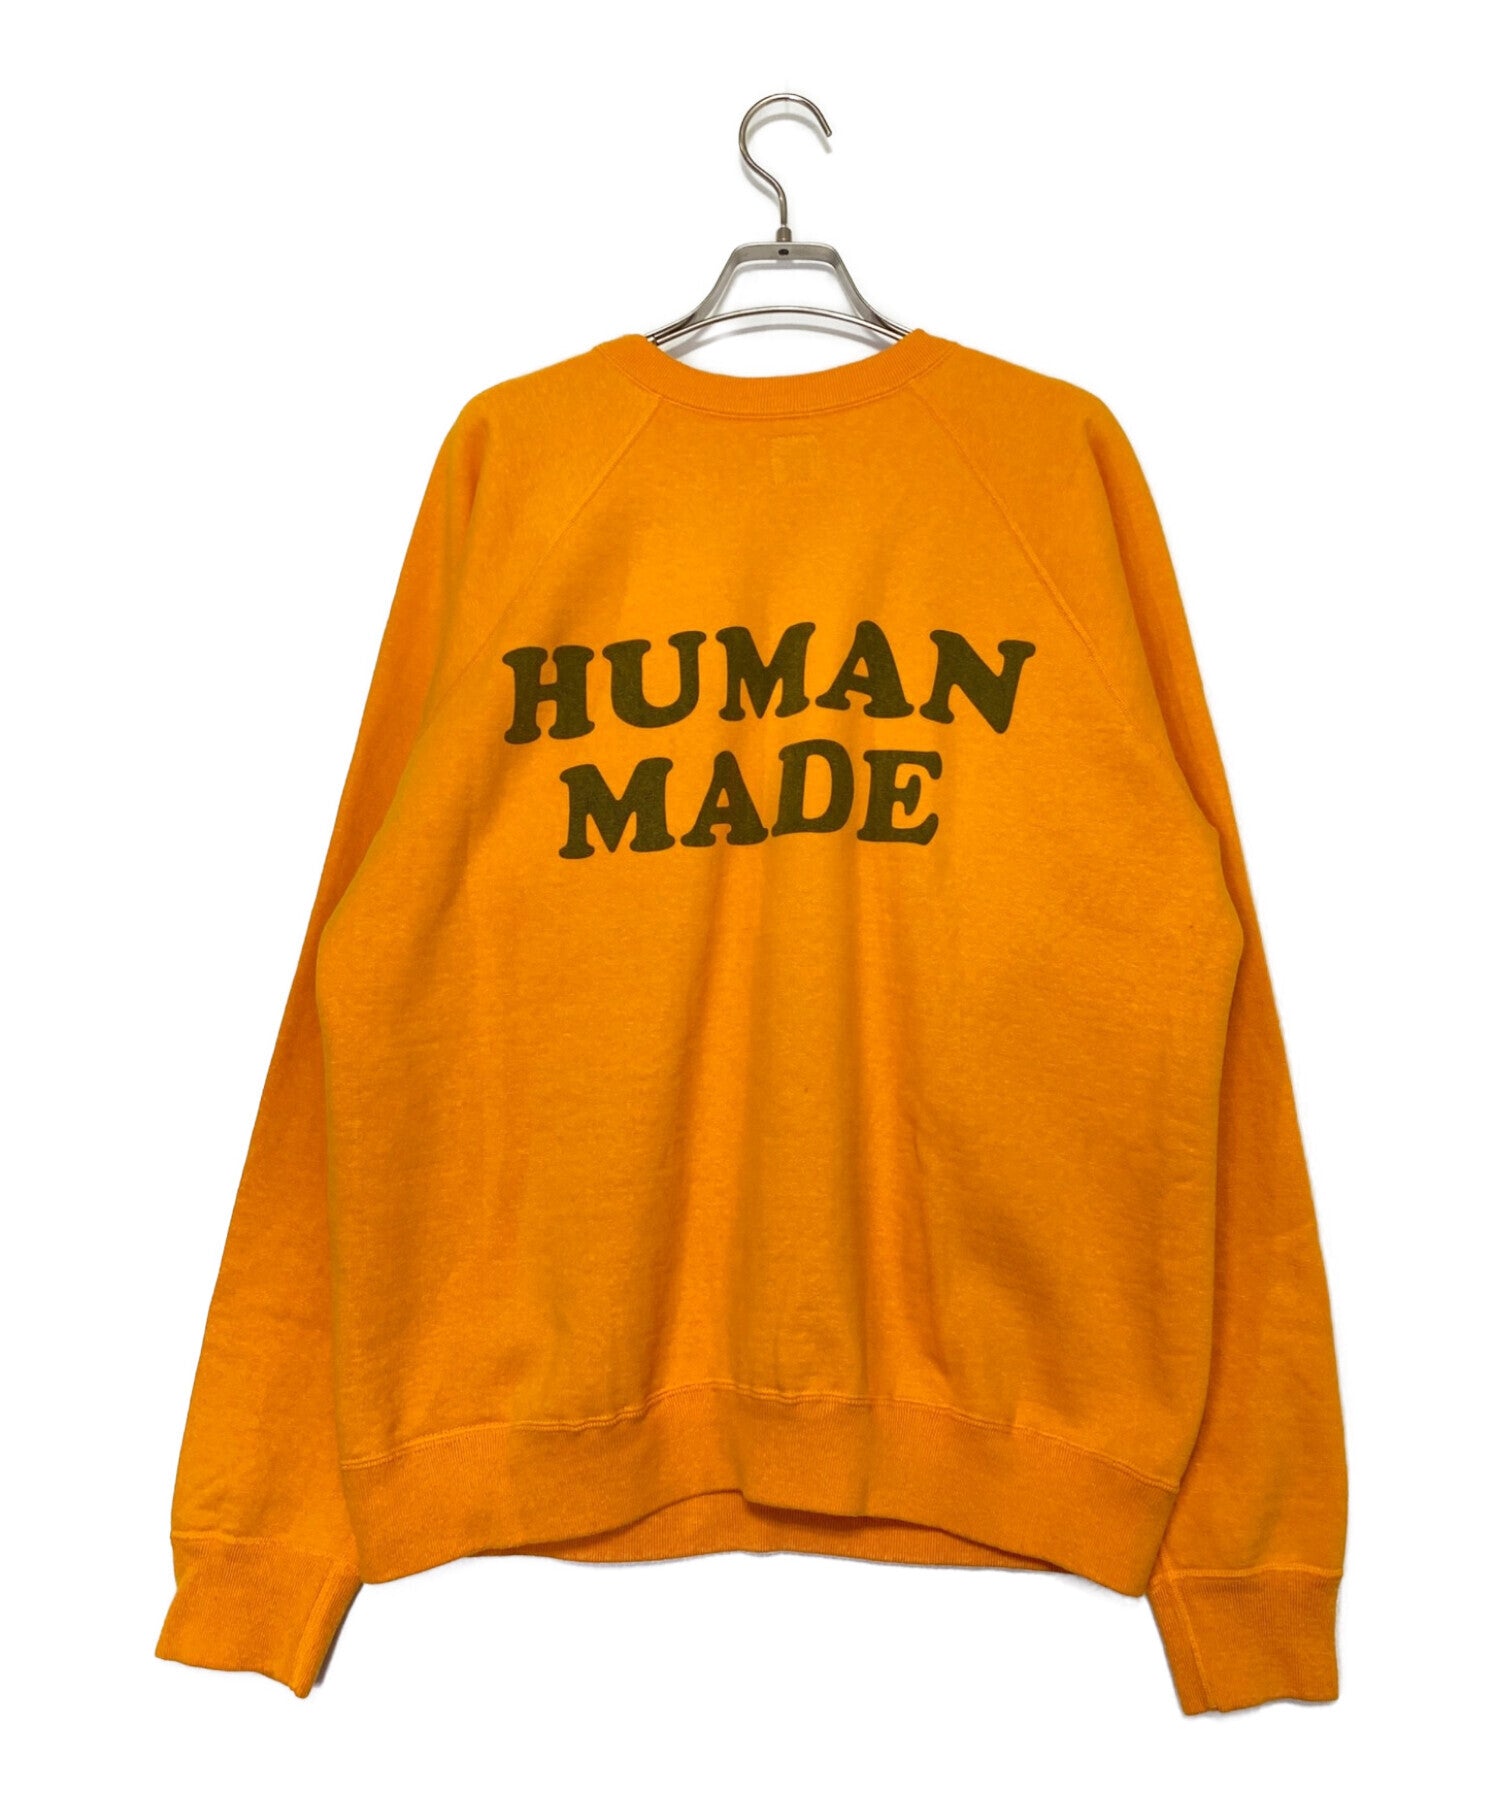 HUMAN MADE PEANUTS SWEATSHIRT #3 ( Peanuts Sweatshirt )